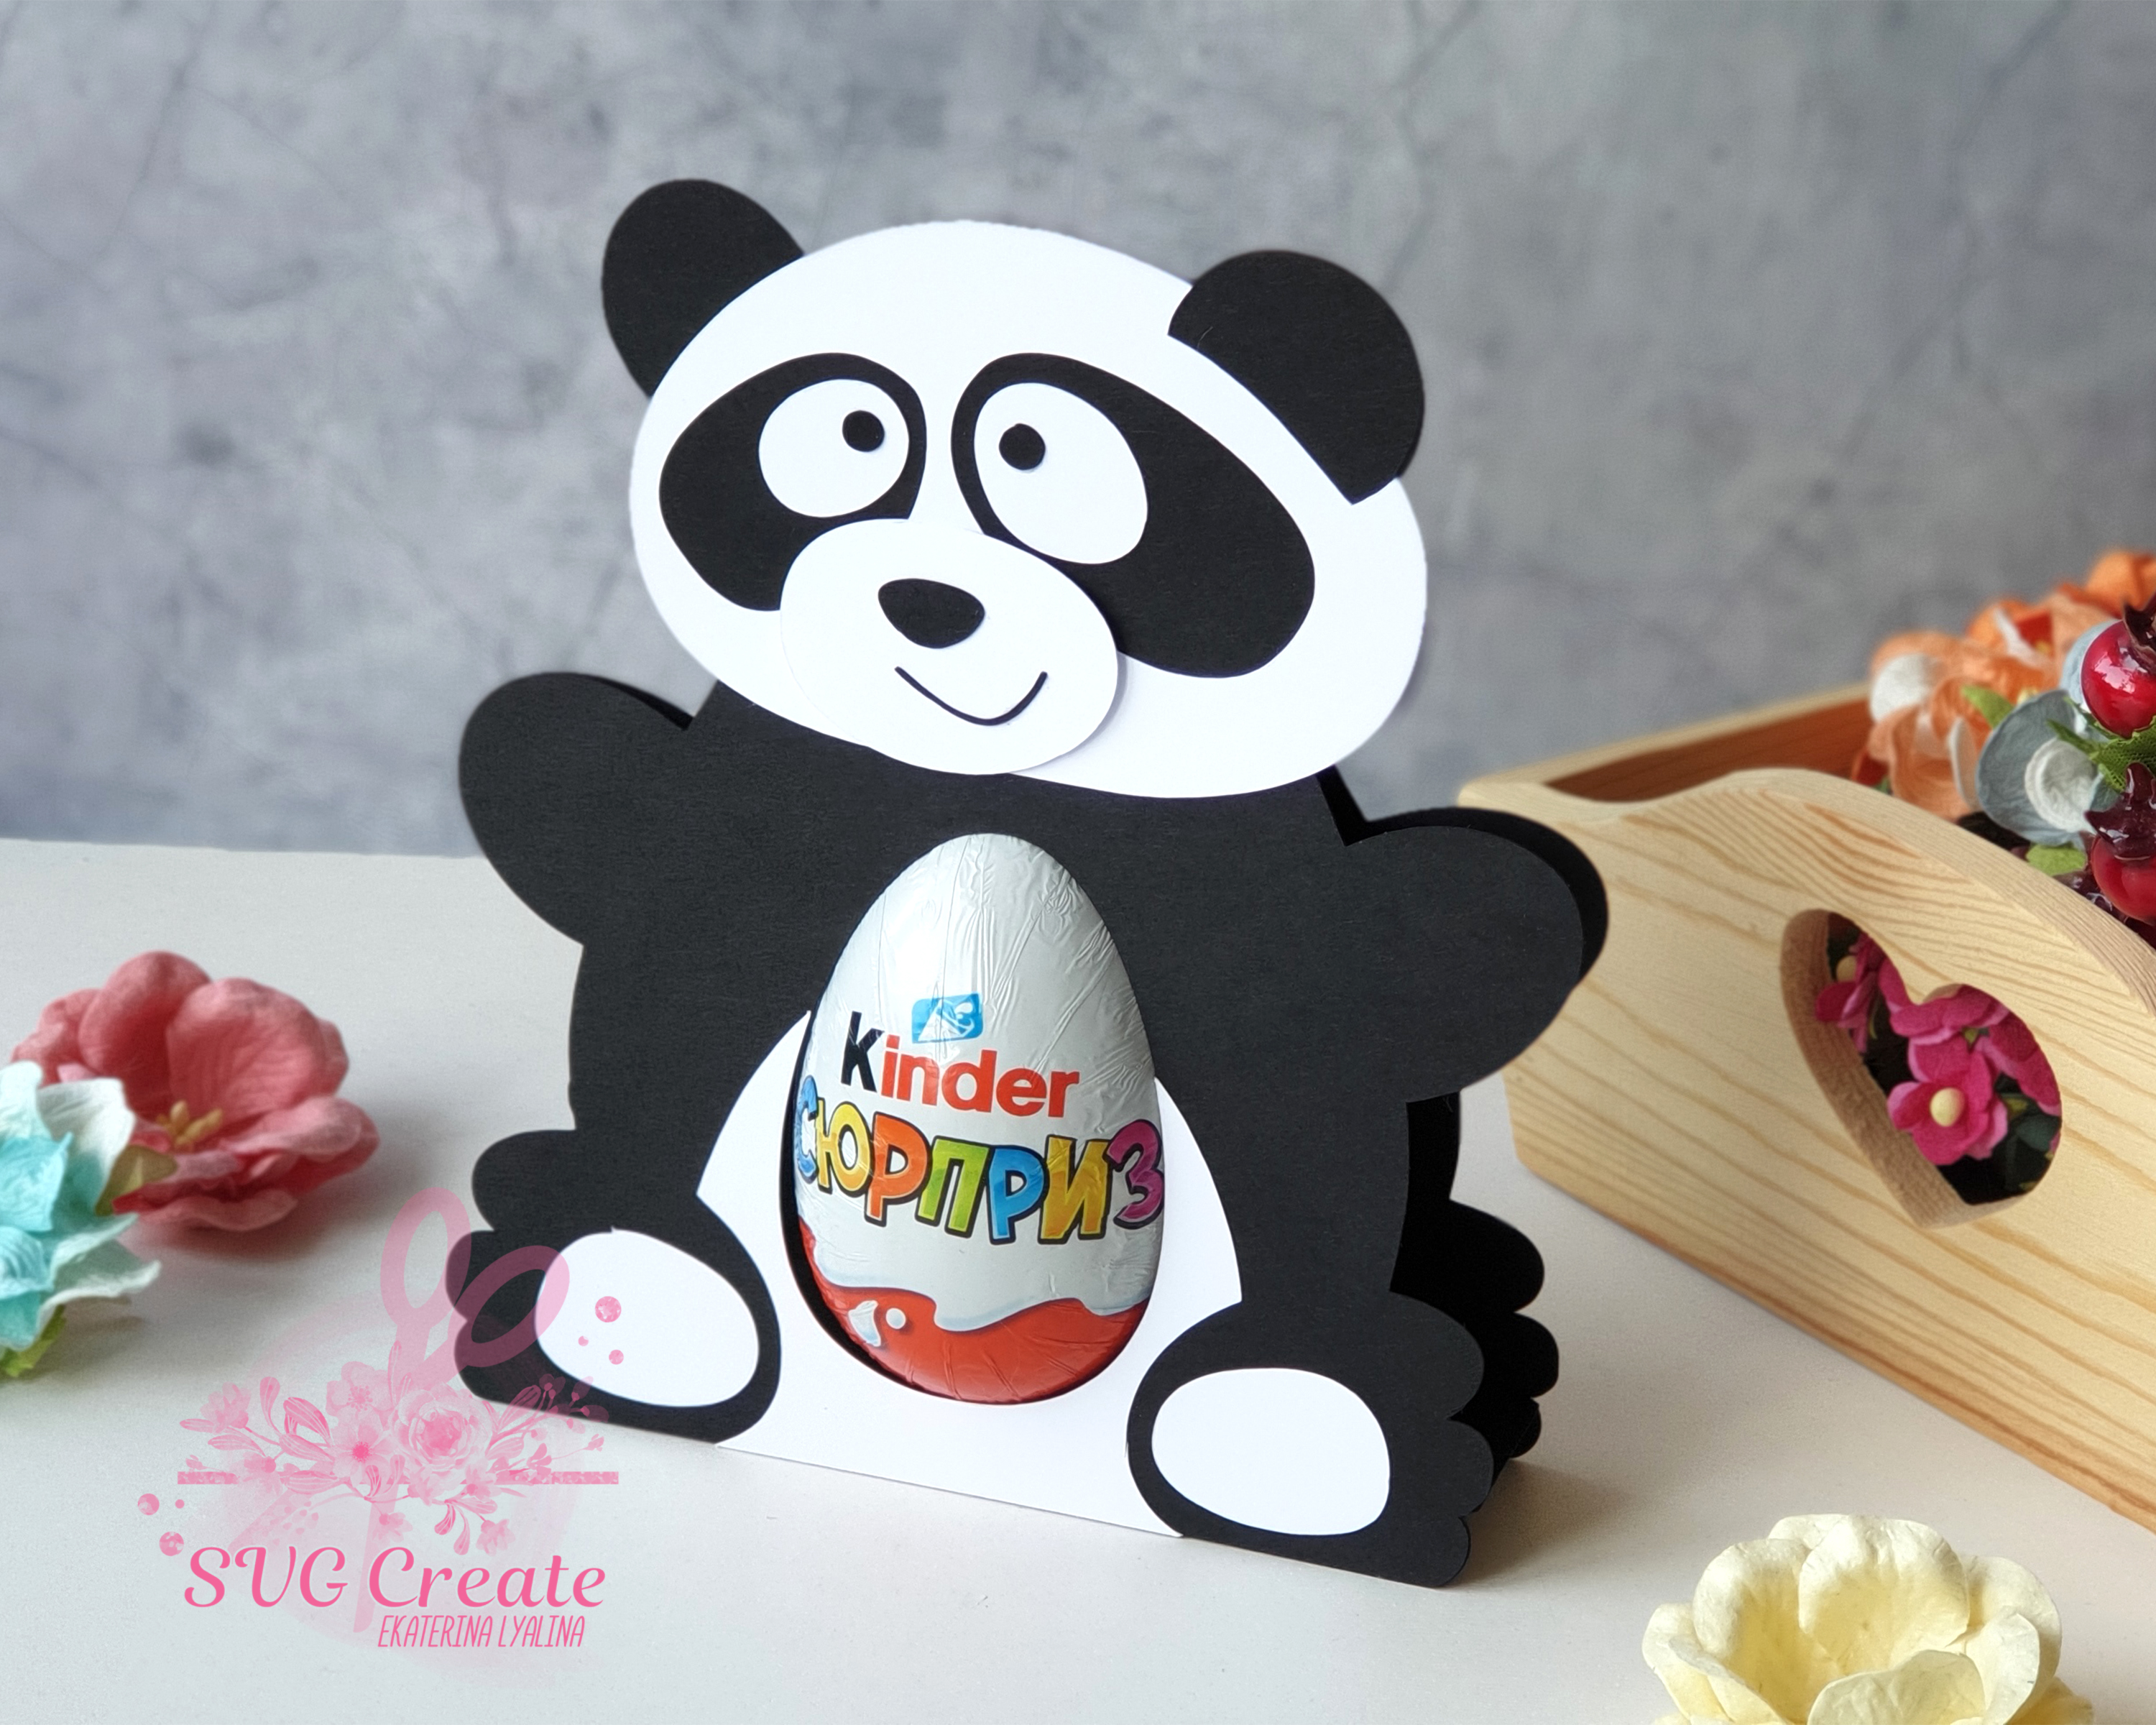 Download Kinder surprise egg holder, svg cutting file, Panda cut